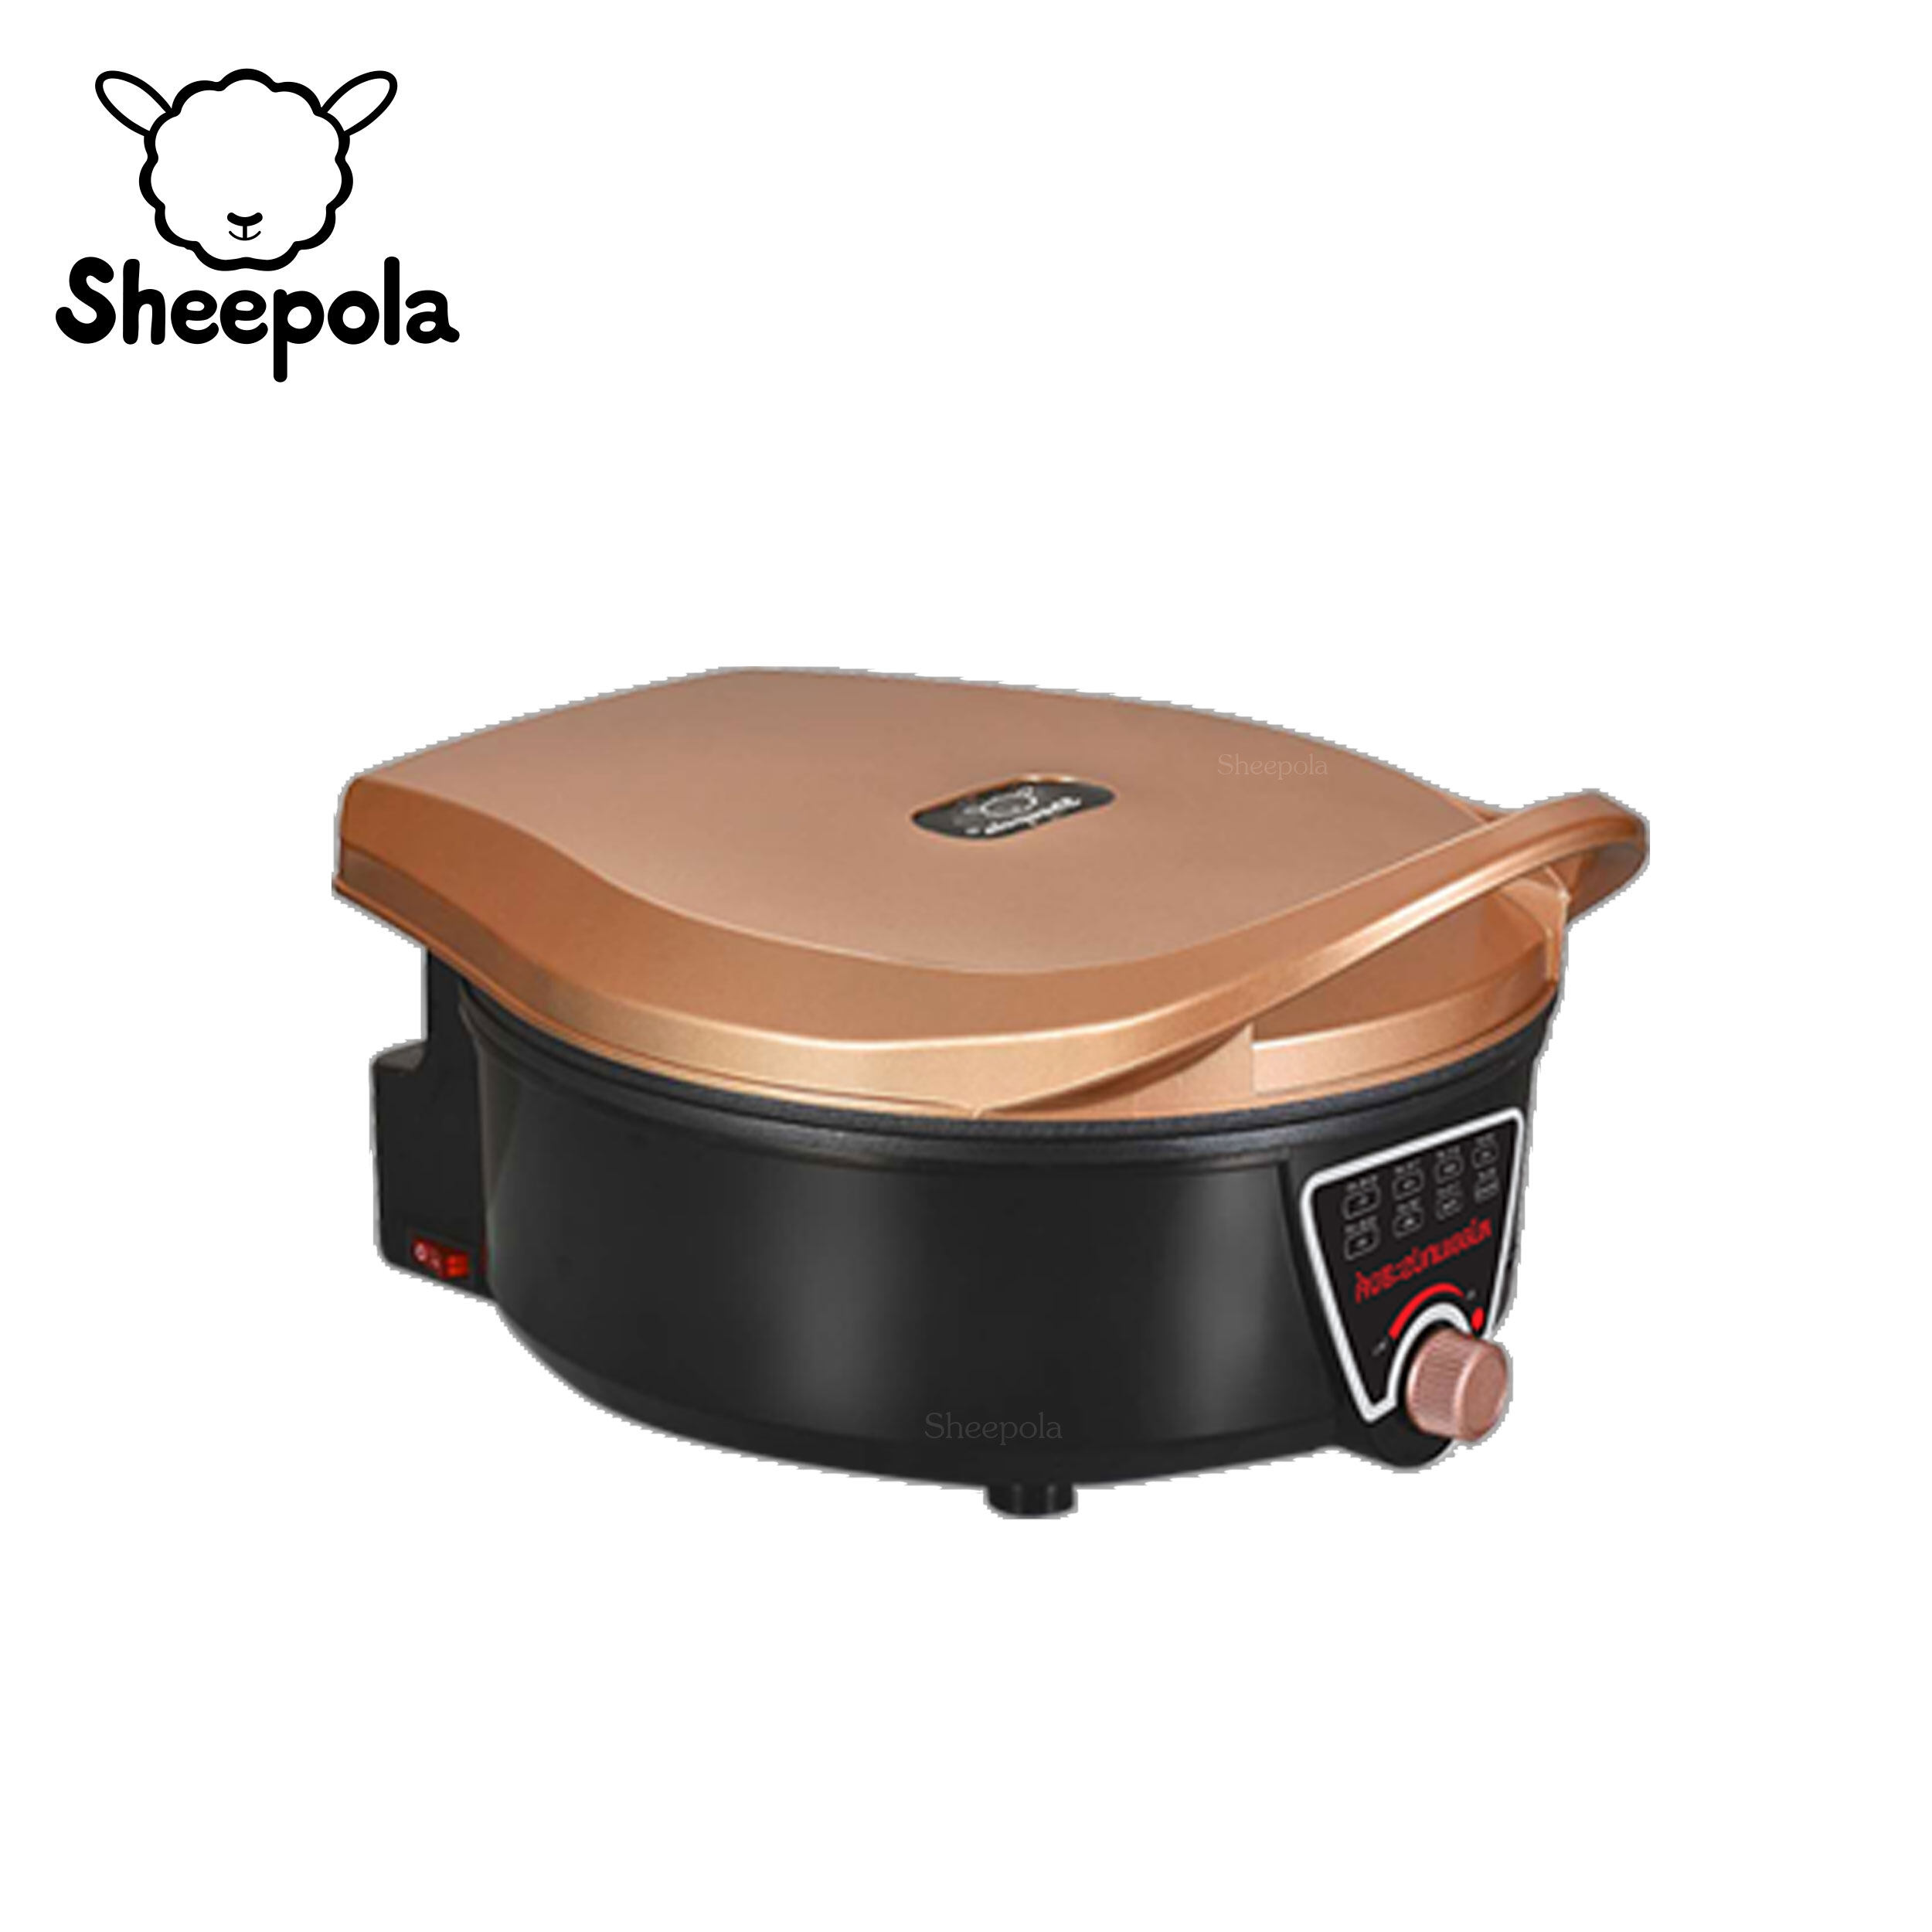 SHEEPOLA รุ่น SP-AT8832-2P เครื่องทําอาหารแบบสองด้าน สุดยอดนวัตกรรมการทำอาหาร ได้หลากหลายเมนูในหม้อเดียว